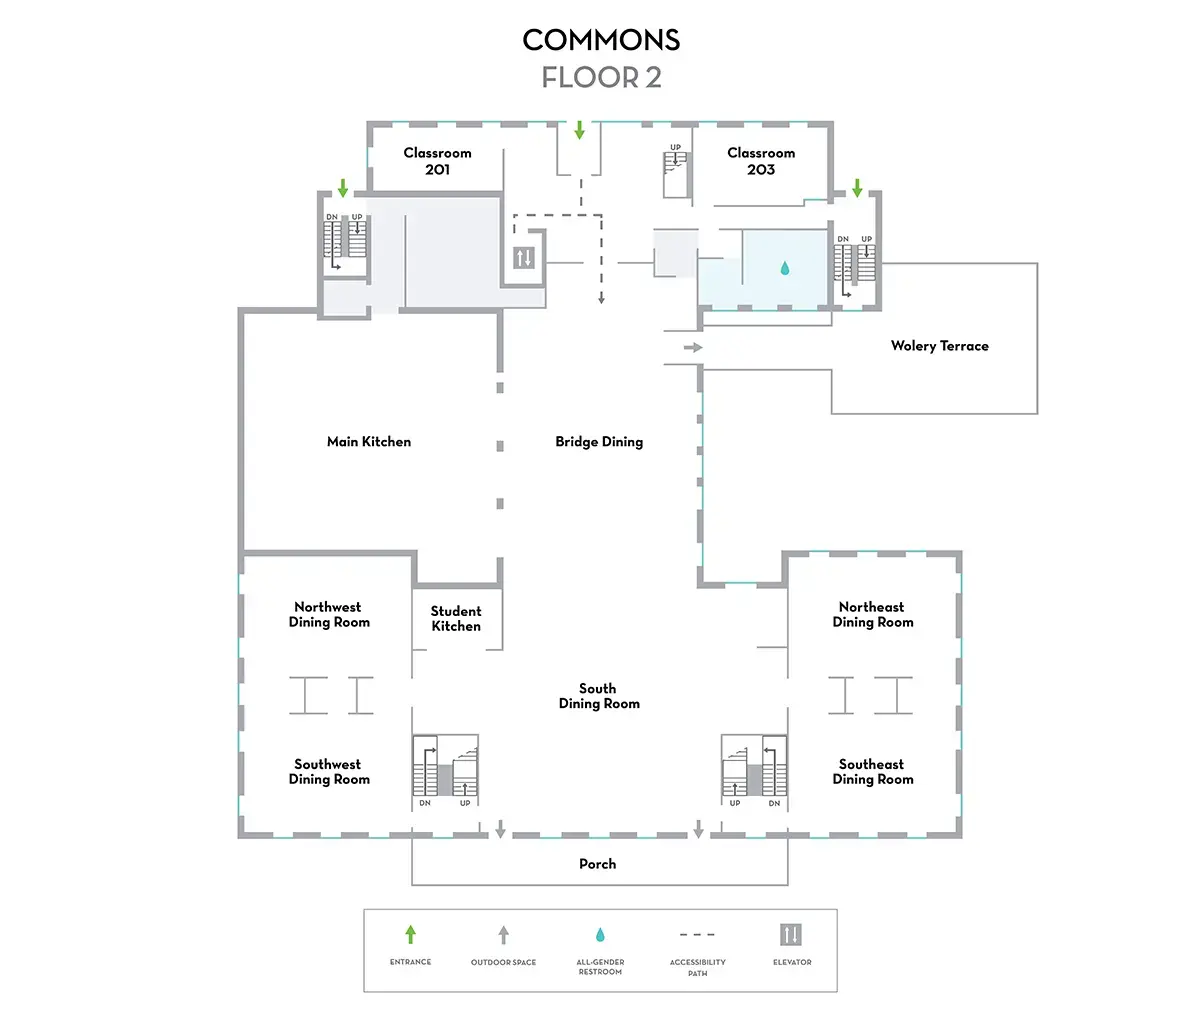 Commons Map Floor 2